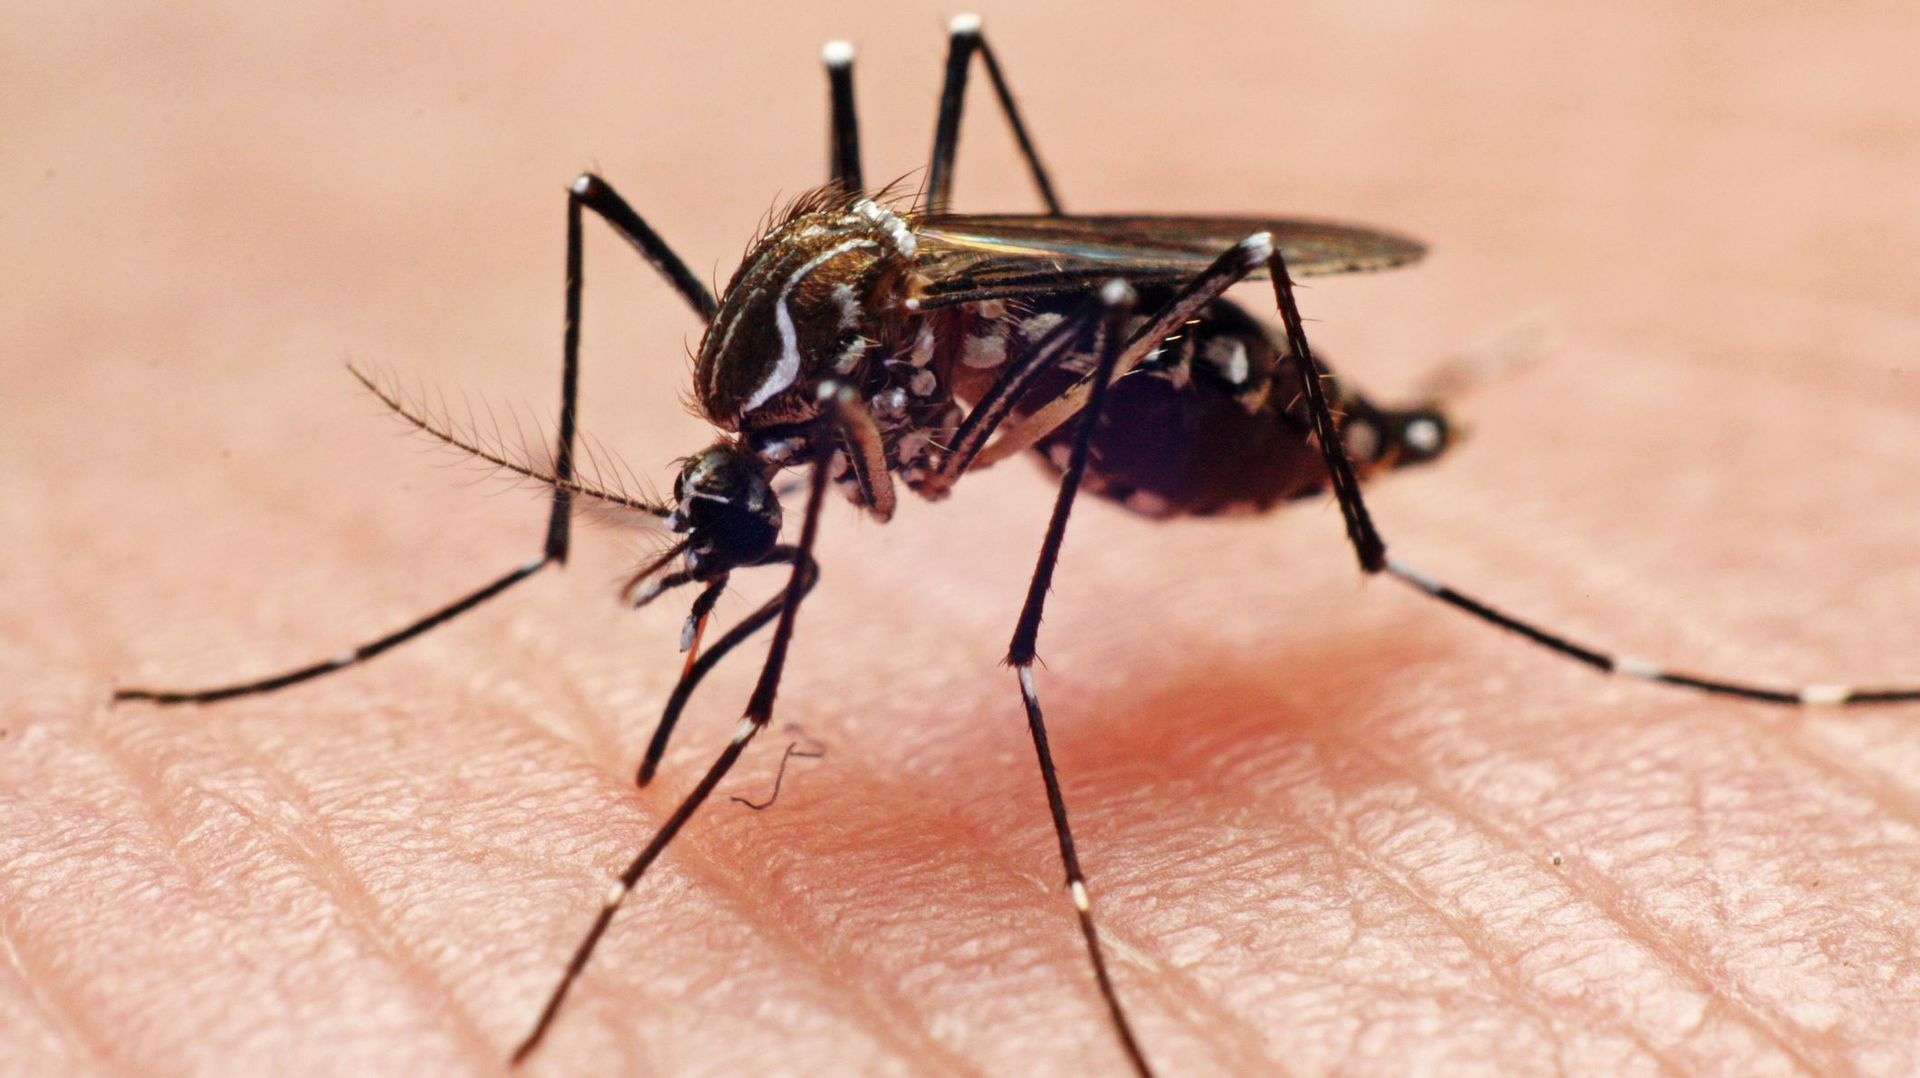 Le Covid-19 peut se transmettre à l’homme par les moustiques affirment certains.